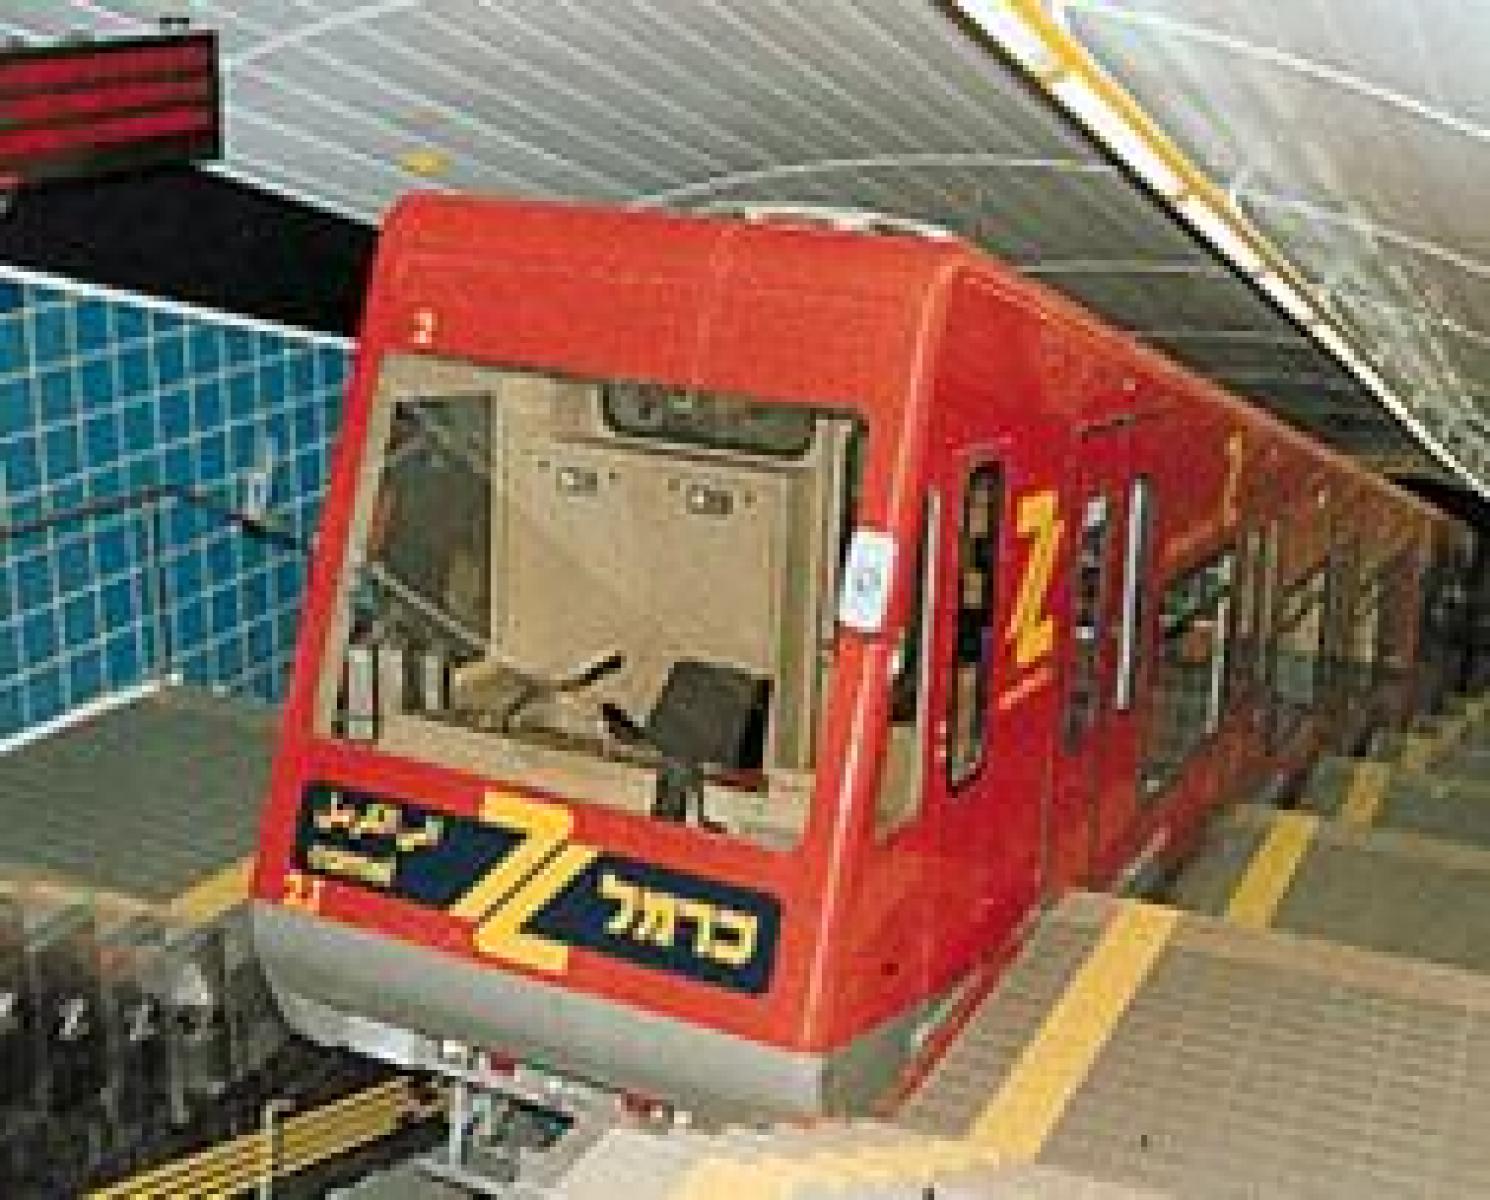 עצומה הפעלת הכרמלית בסופש והסדרת תחנות האוטובוס בחיפה 4905